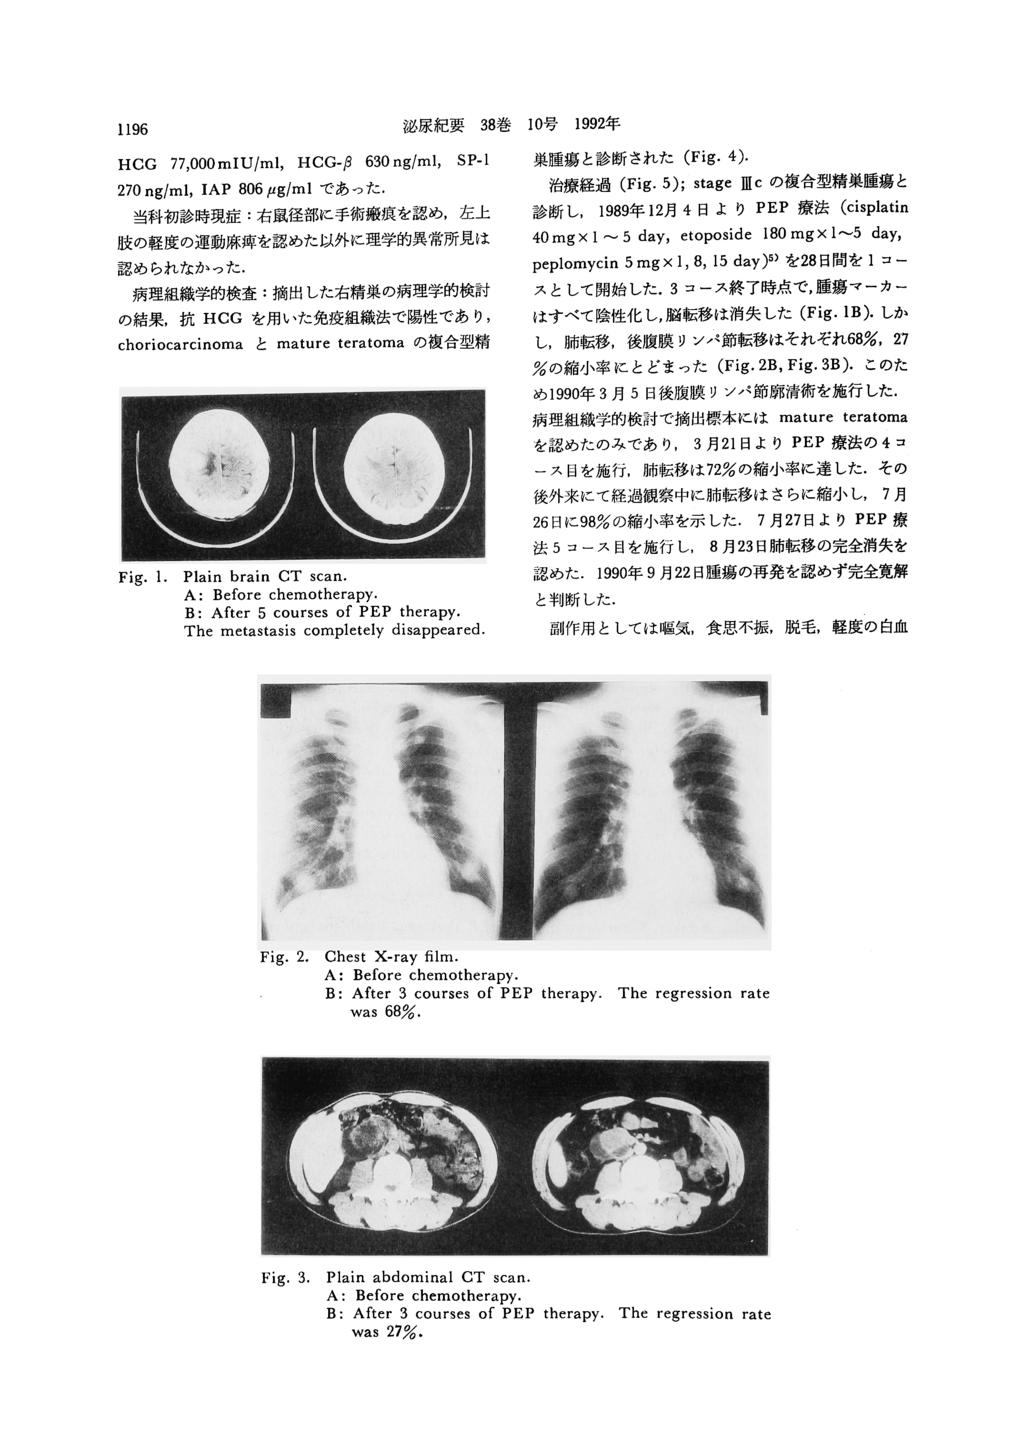 泌尿 紀 要38巻10号1992年 1196 cg77,000miu/ml,cg 巣 腫 瘍 と 診 断 さ れ た(Fig.4).